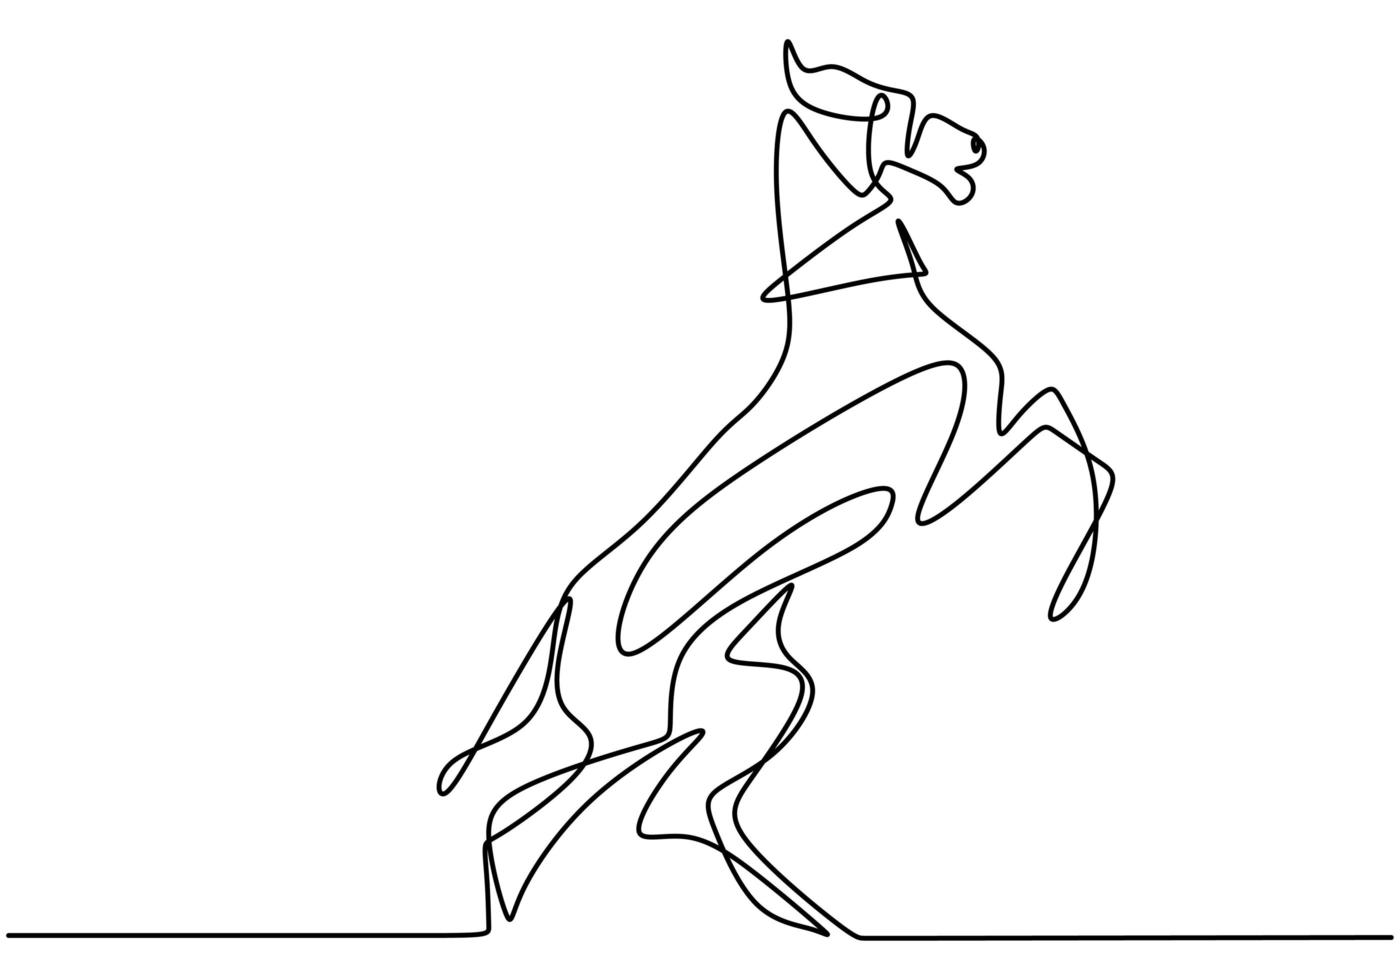 contínuo um desenho de linha de um cavalo correndo. cavalo elegante feito em um estilo minimalista. vetor